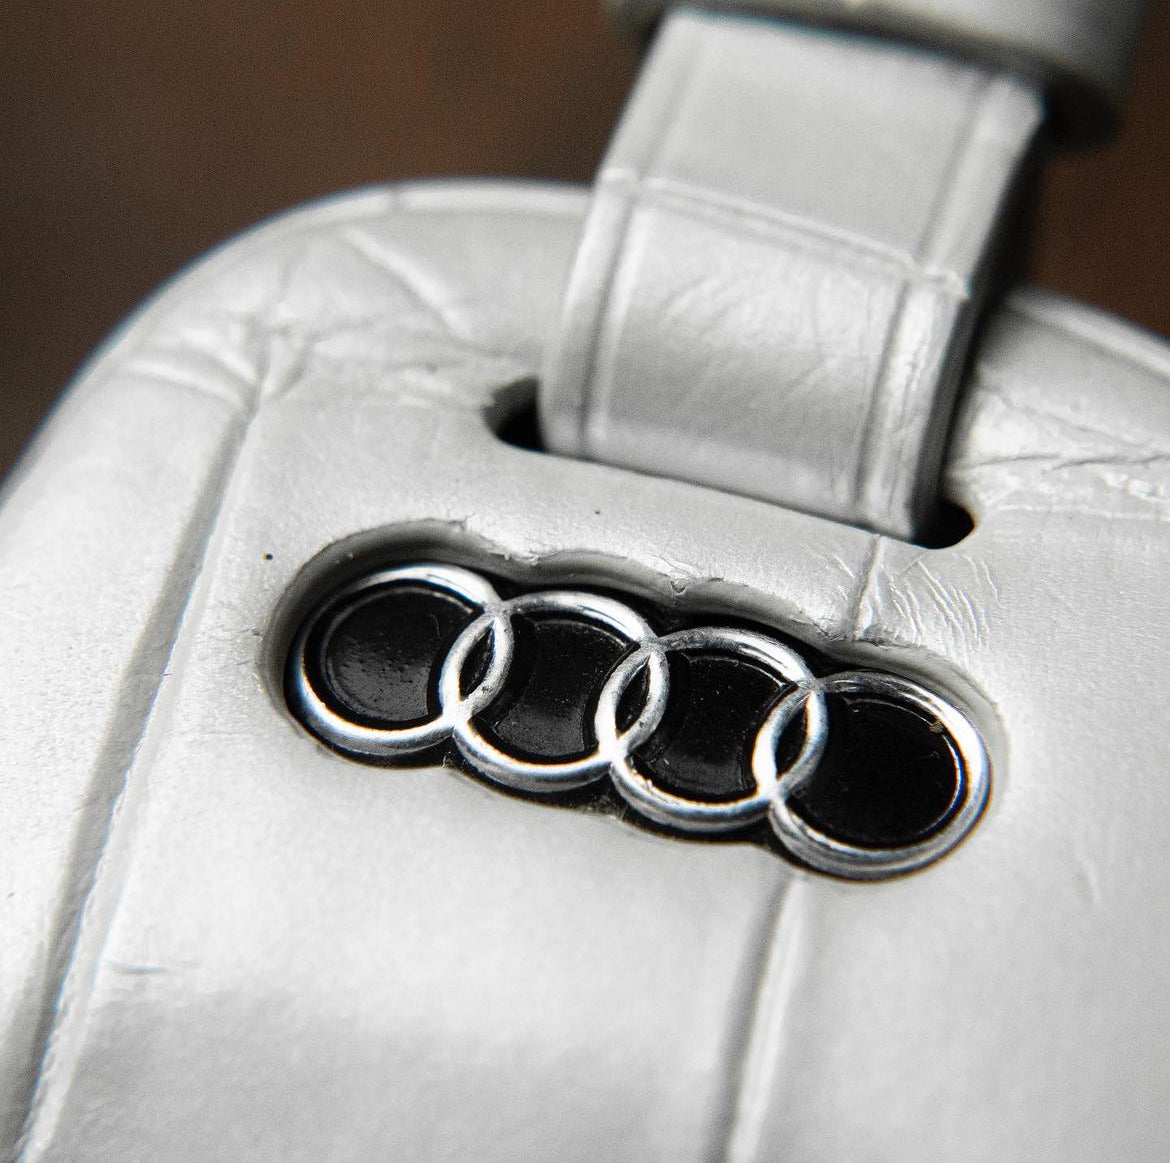 Audi Key Cover Model Type 2 - CUSTOM ORDER YOURS